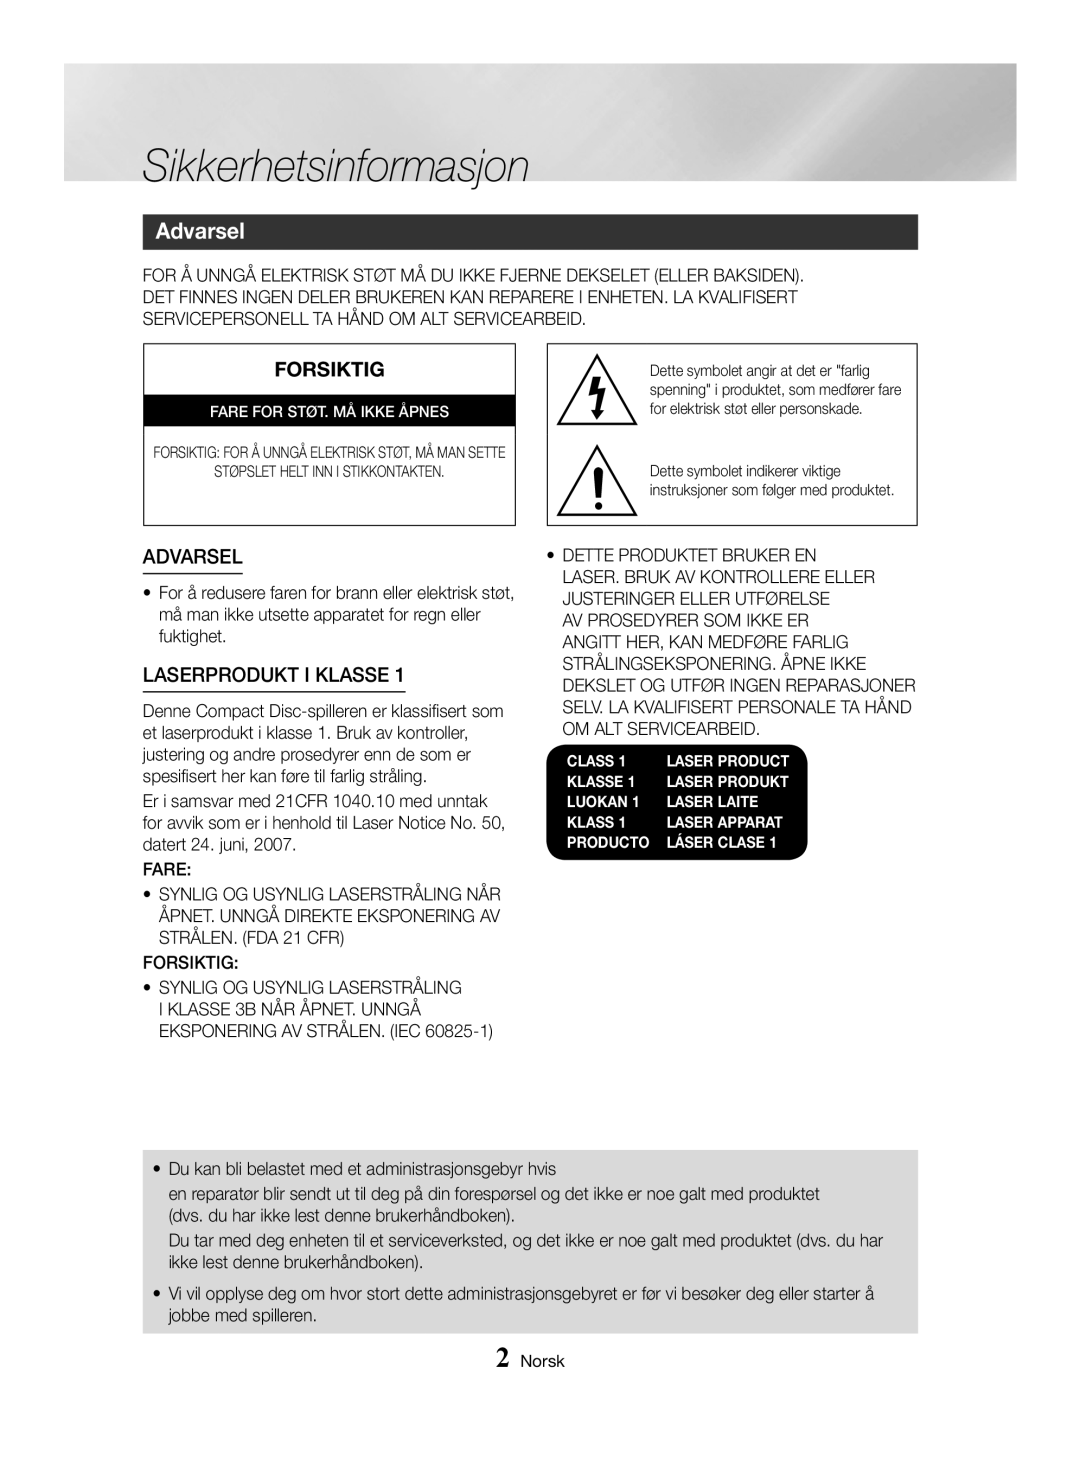 Samsung MX-HS8000/EN, MX-HS8000/ZF manual Sikkerhetsinformasjon, Forsiktig, Laserprodukt I Klasse, Advarsel 